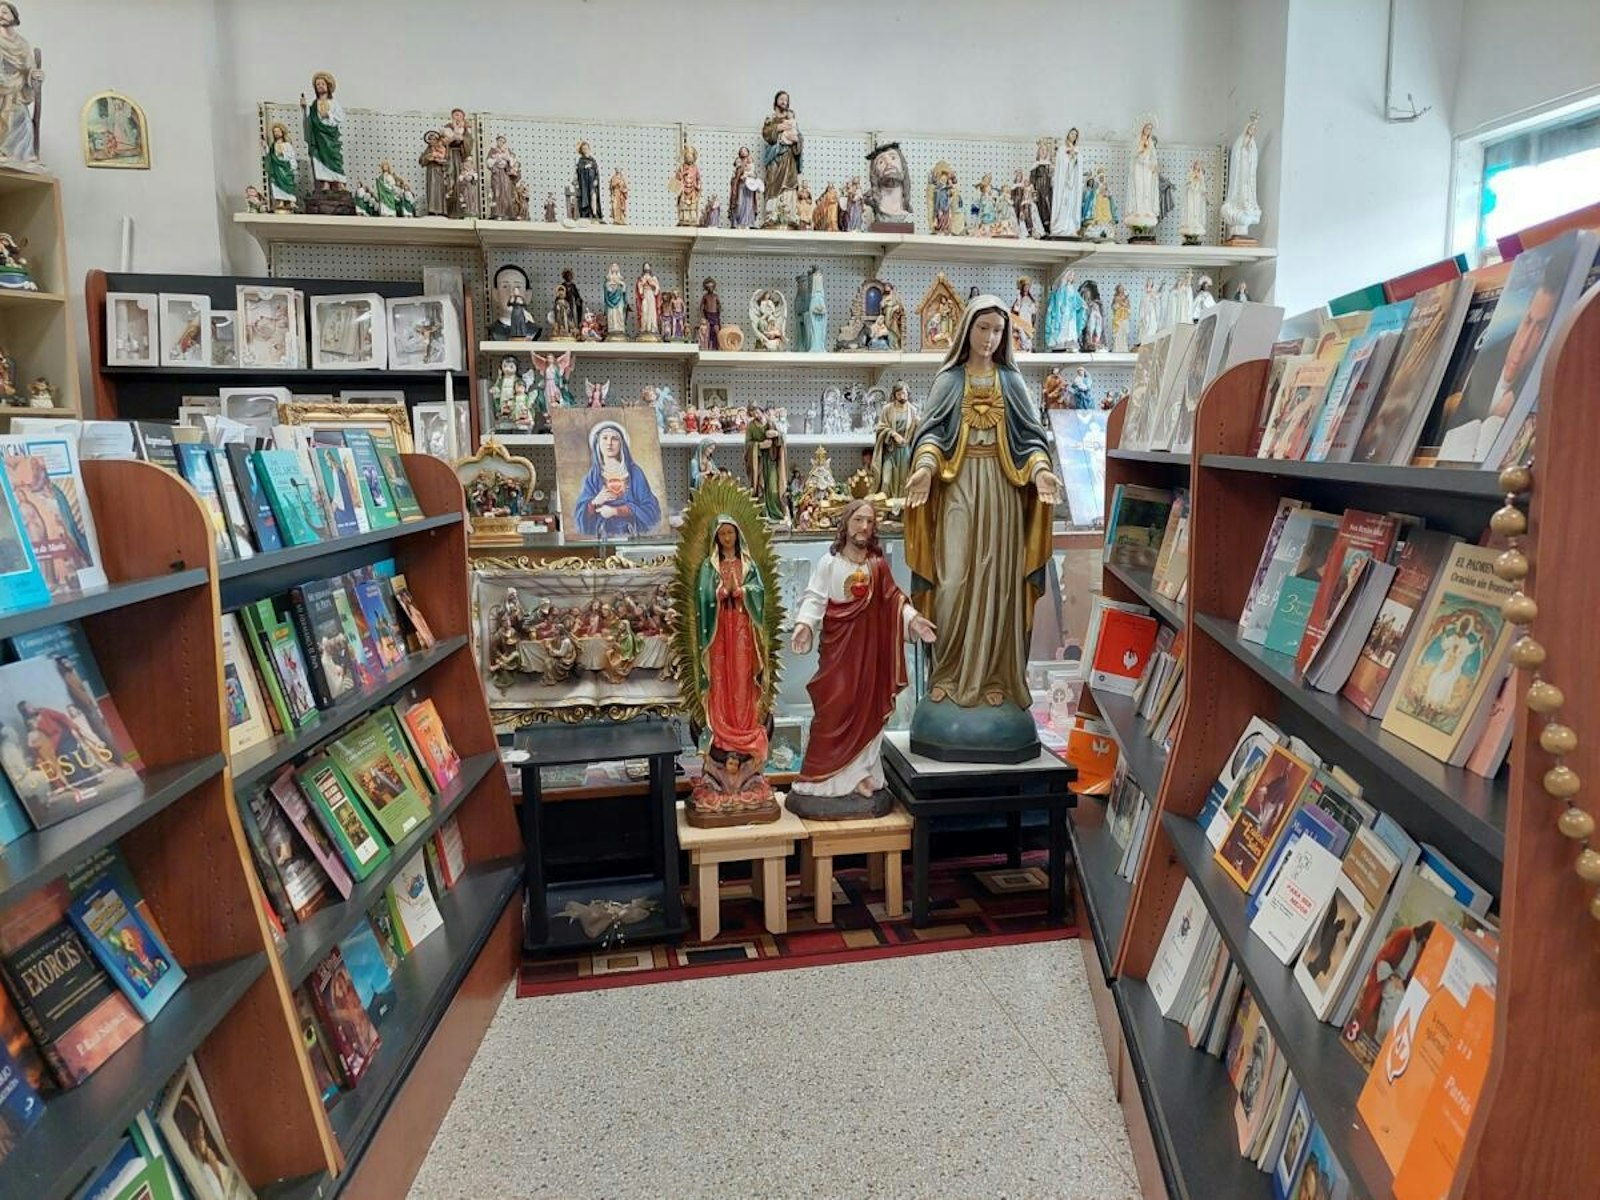 En cada libro, en cada artículo, en cada palabra, se manifiesta la convicción de que ‘Ave María’ es más que un lugar de compras; es un espacio donde la presencia de Dios se hace tangible. (Foto cortesía de Bertha Grajeda)